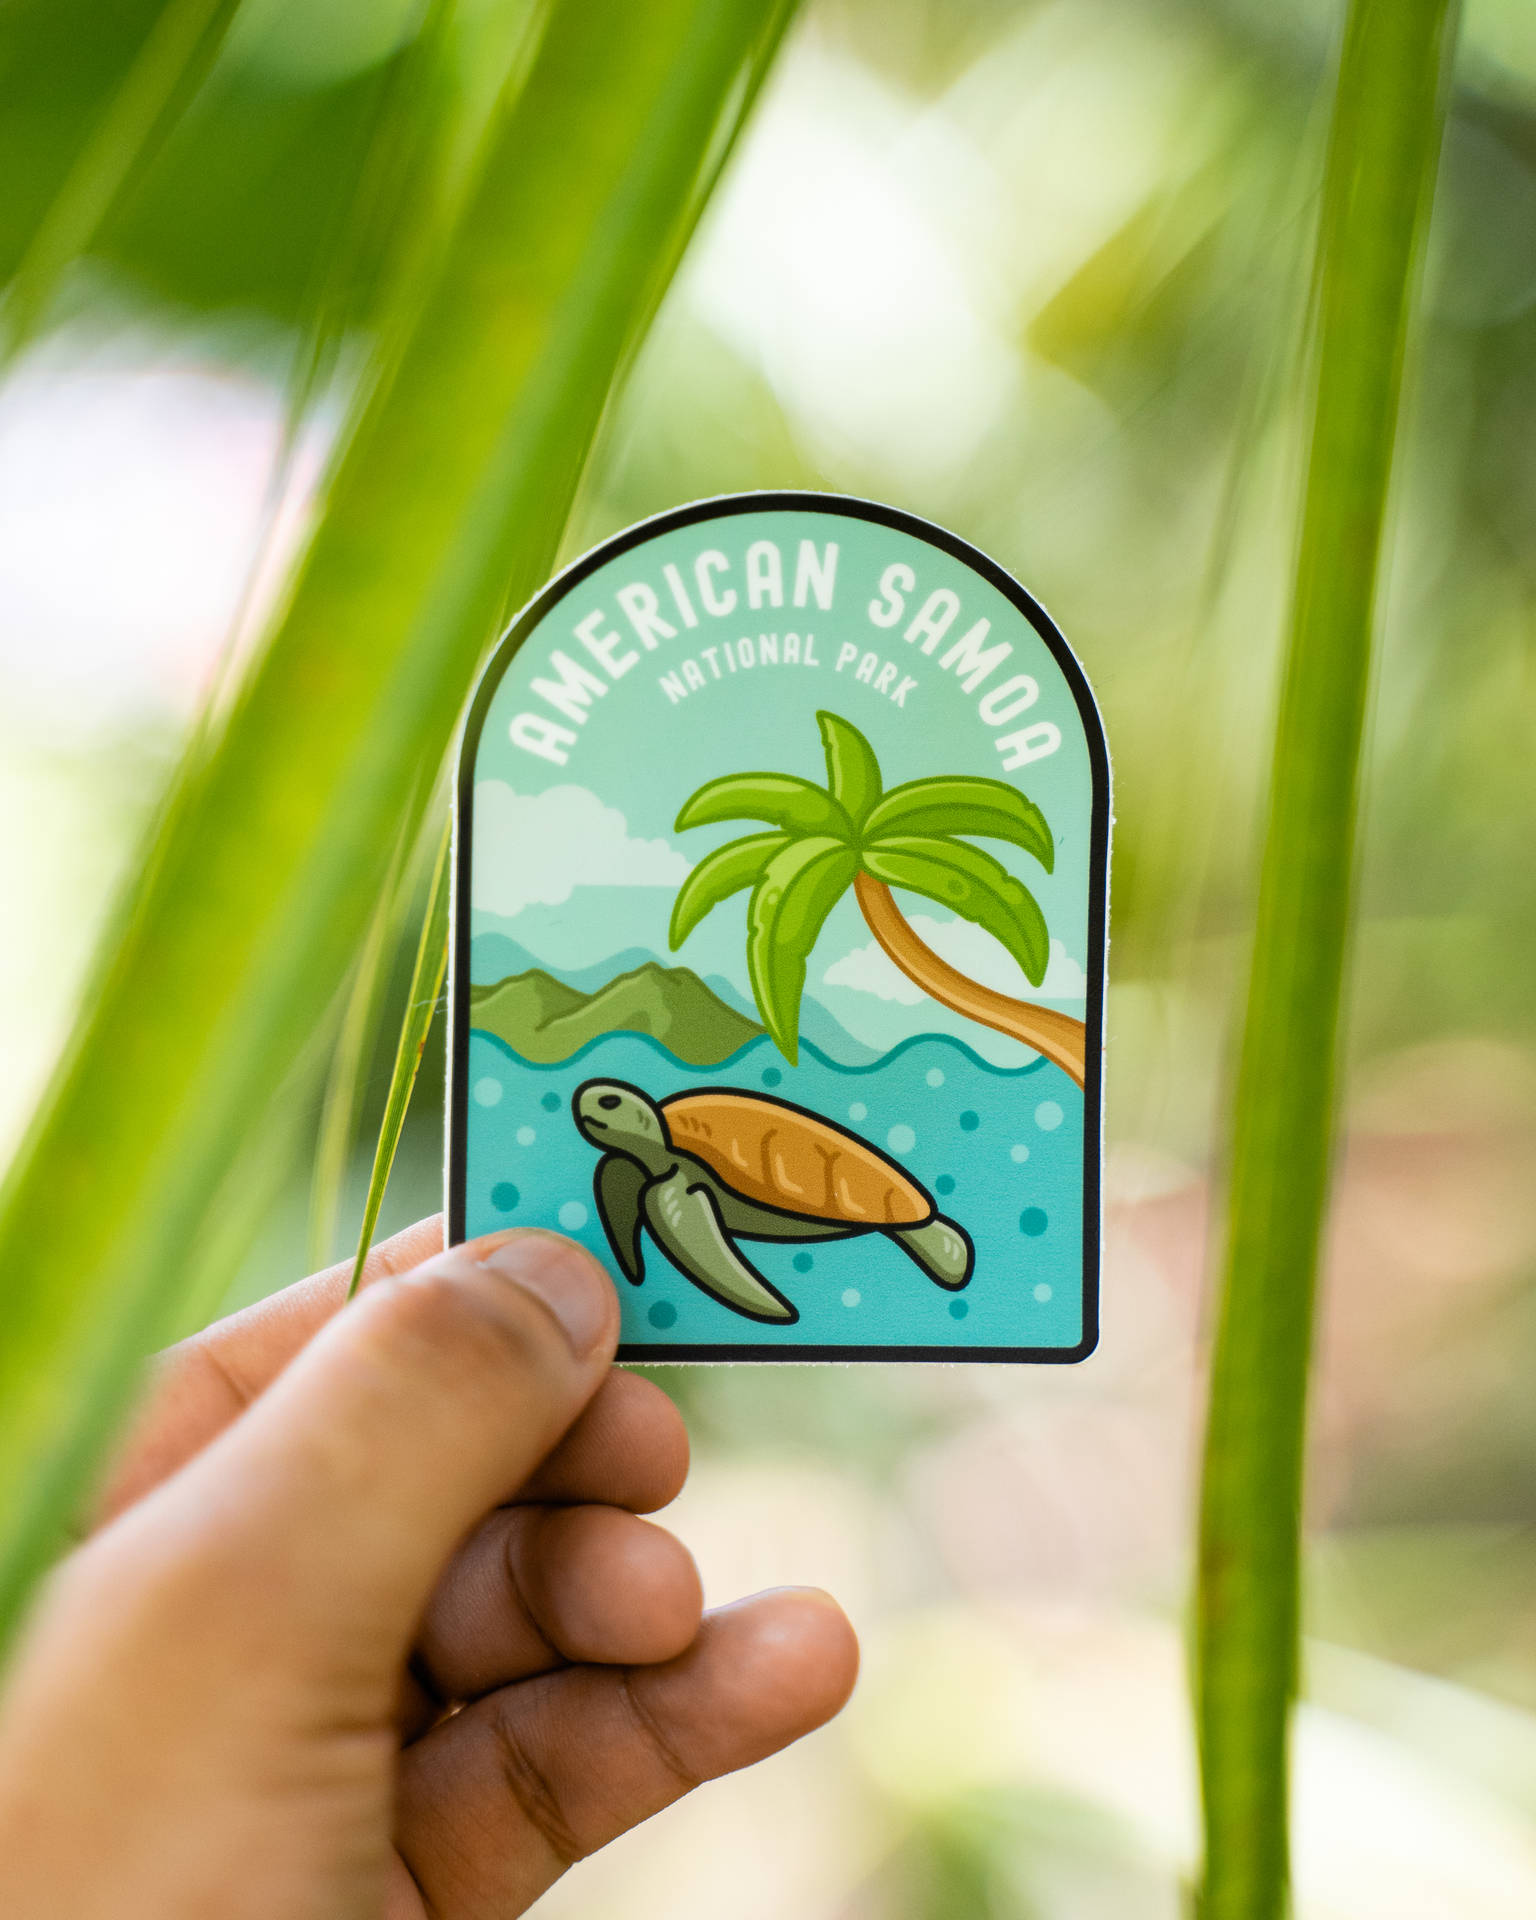 Samoa National Park Logo Wallpaper